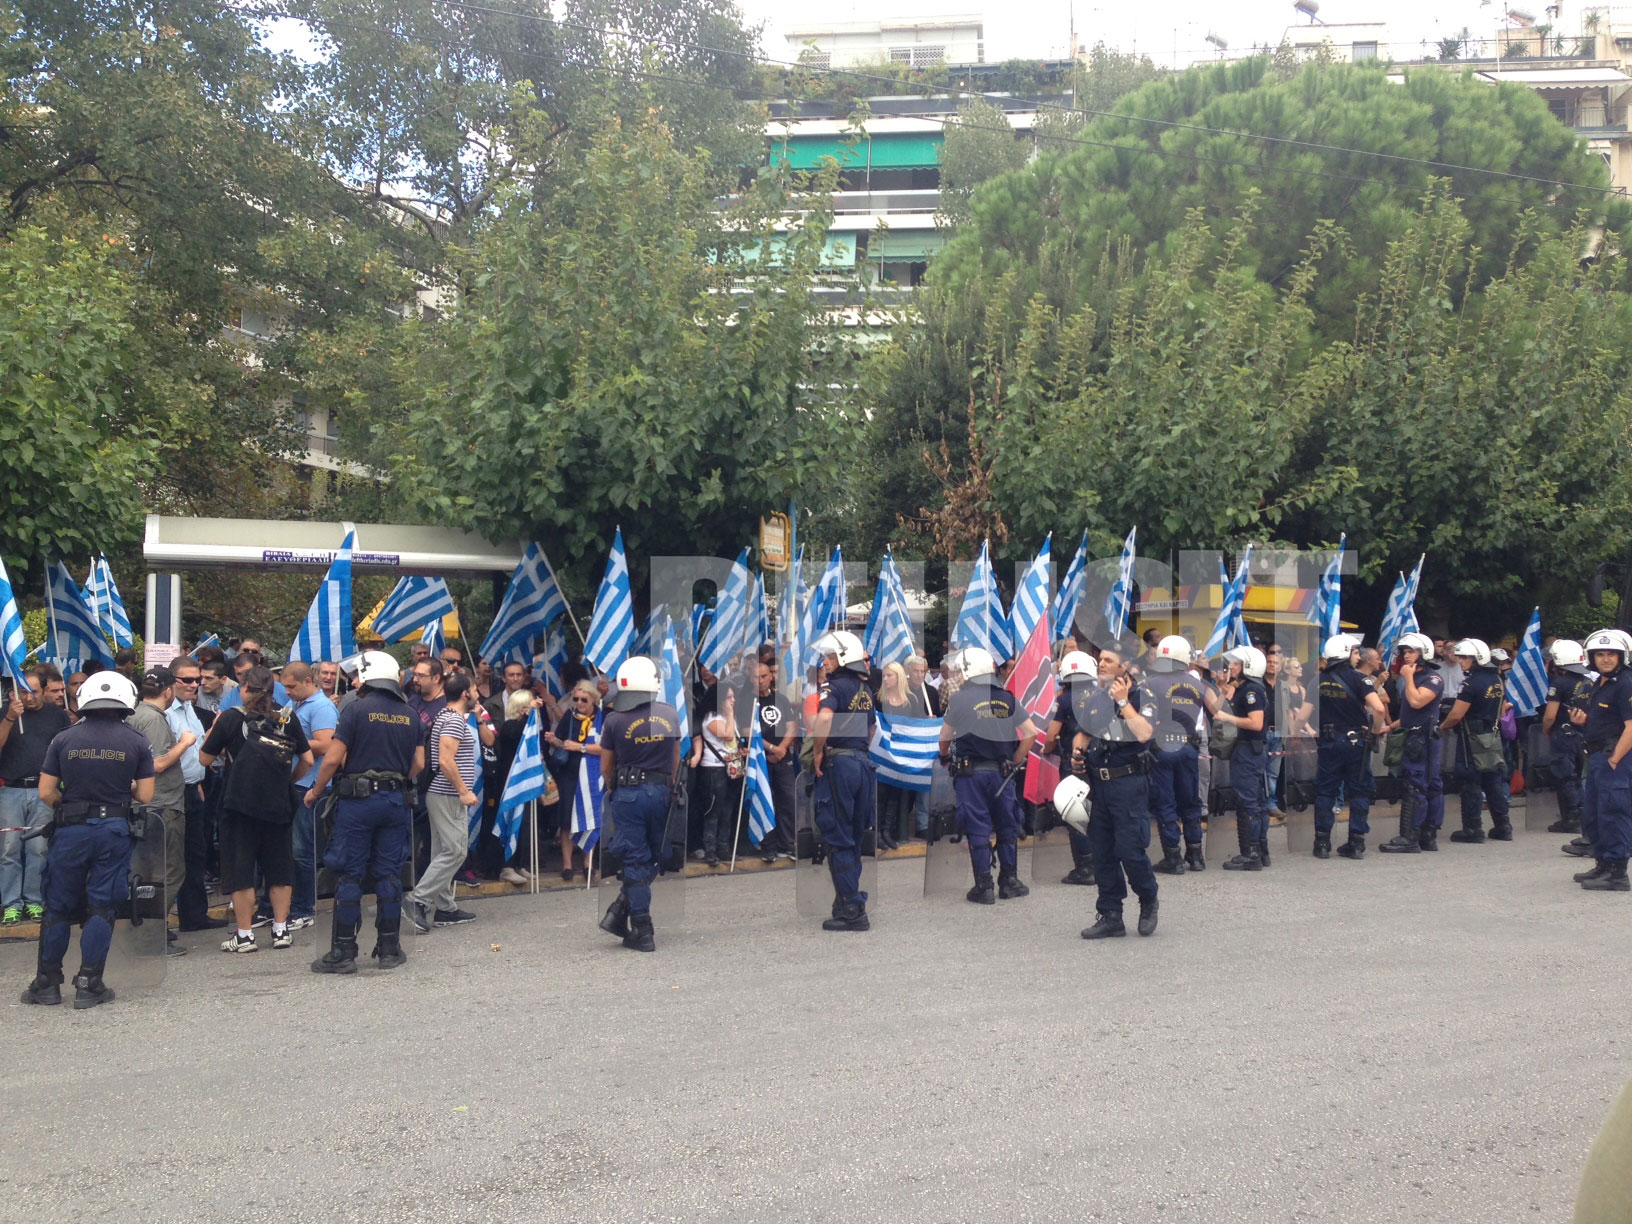 Περίπου 150-200 άτομα συγκεντρώθηκαν έξω από τα δικαστήρια - ΦΩΤΟ NEWSIT